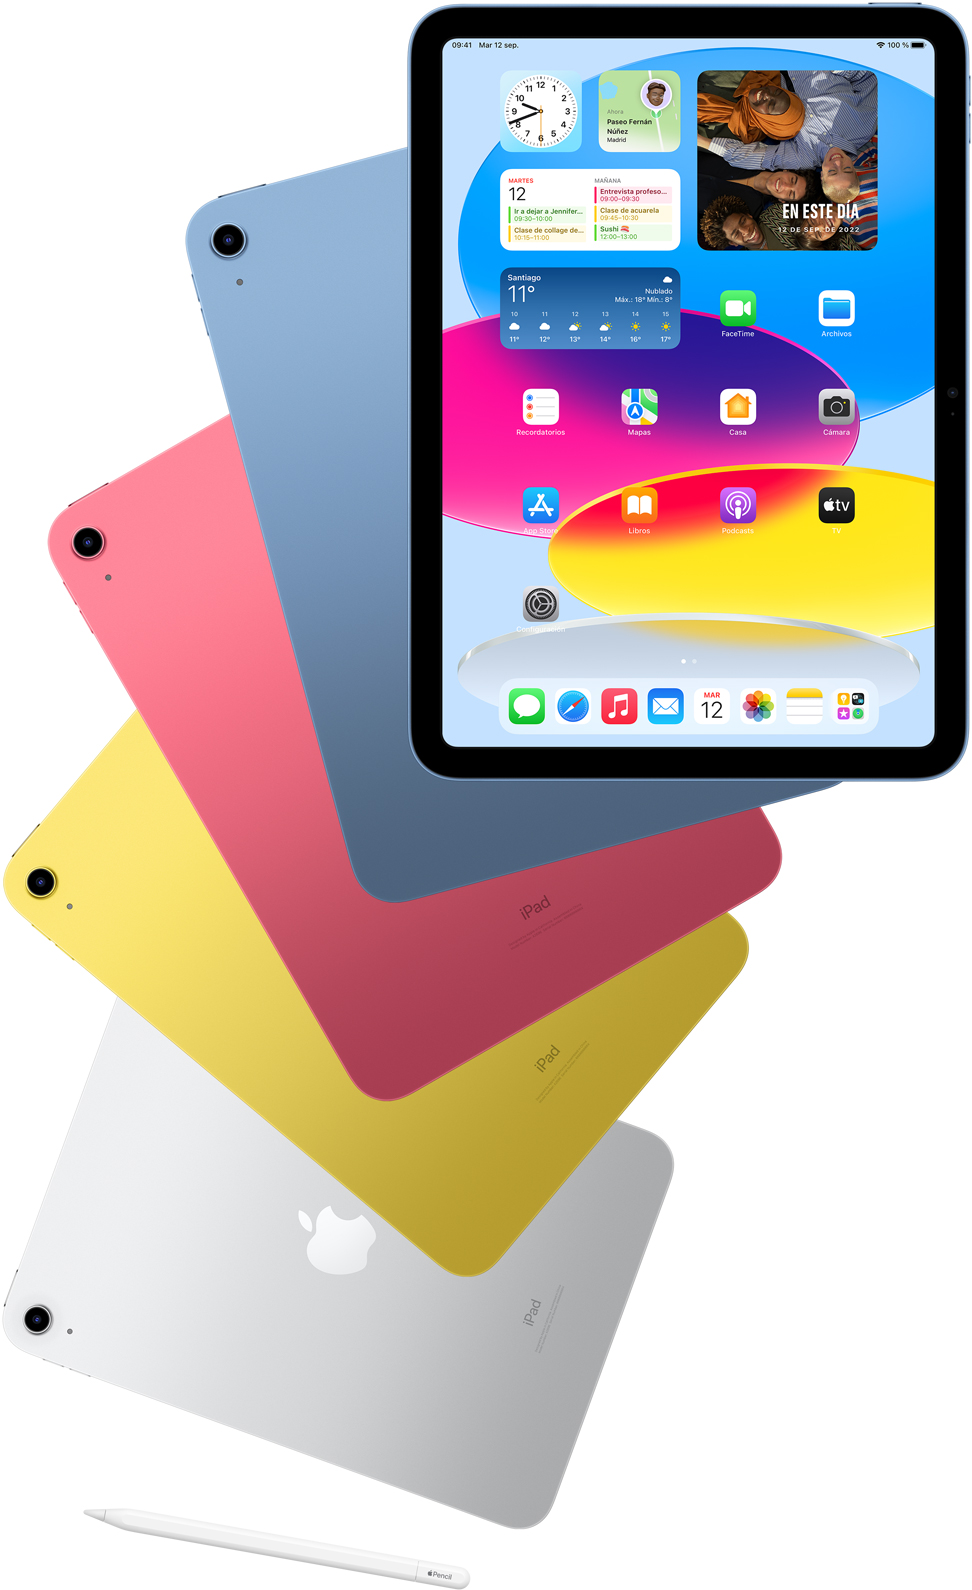 Vista frontal de un iPad con la pantalla de inicio y, por detrás, vistas traseras de otros dispositivos iPad en azul, rosa, amarillo y color plata. Se muestra un Apple Pencil cerca de distintos iPad.